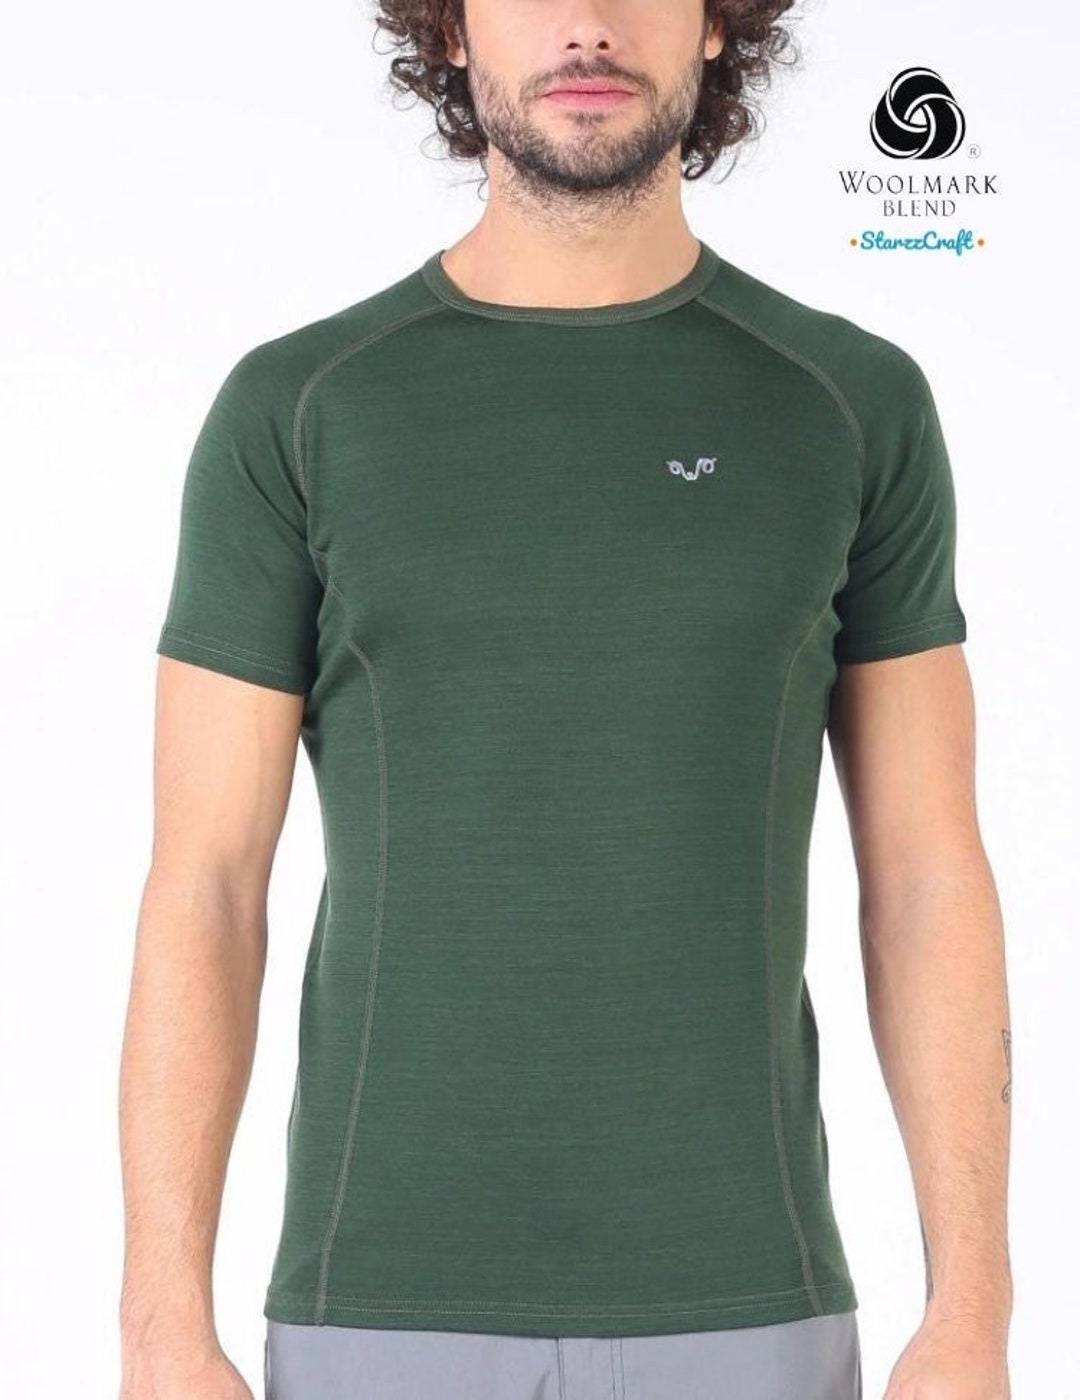 Camisetas de Lana Merino para Hombre ֍ Máxima Comodidad en tu Piel